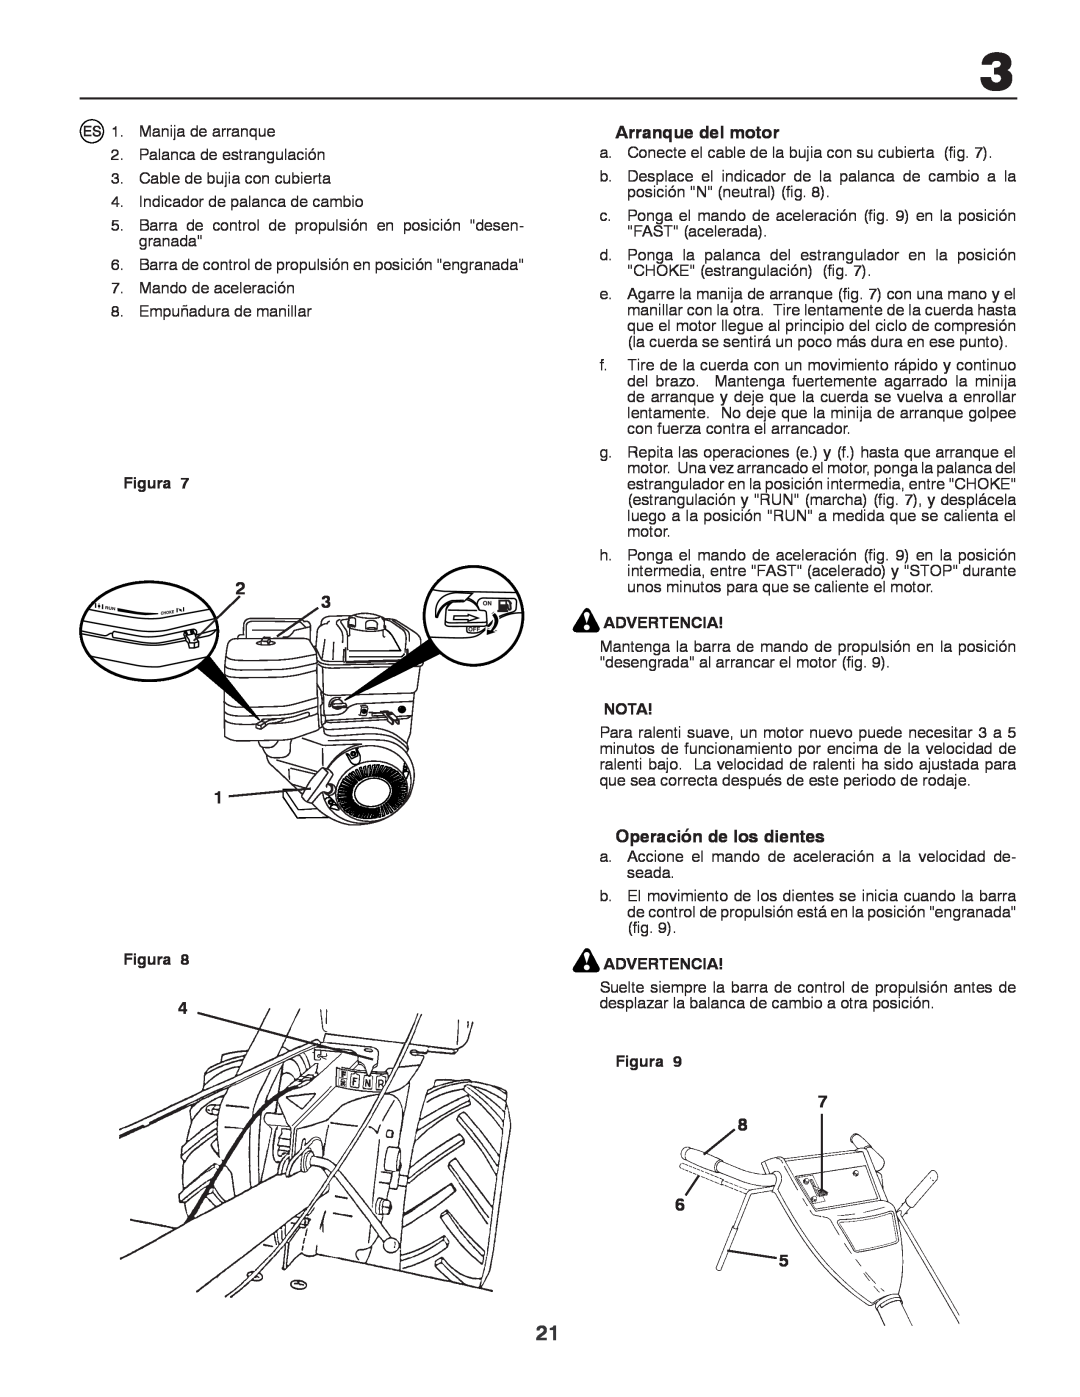 Husqvarna CRT81 instruction manual Arranque del motor, Operación de los dientes, Figura, Advertencia, Nota 